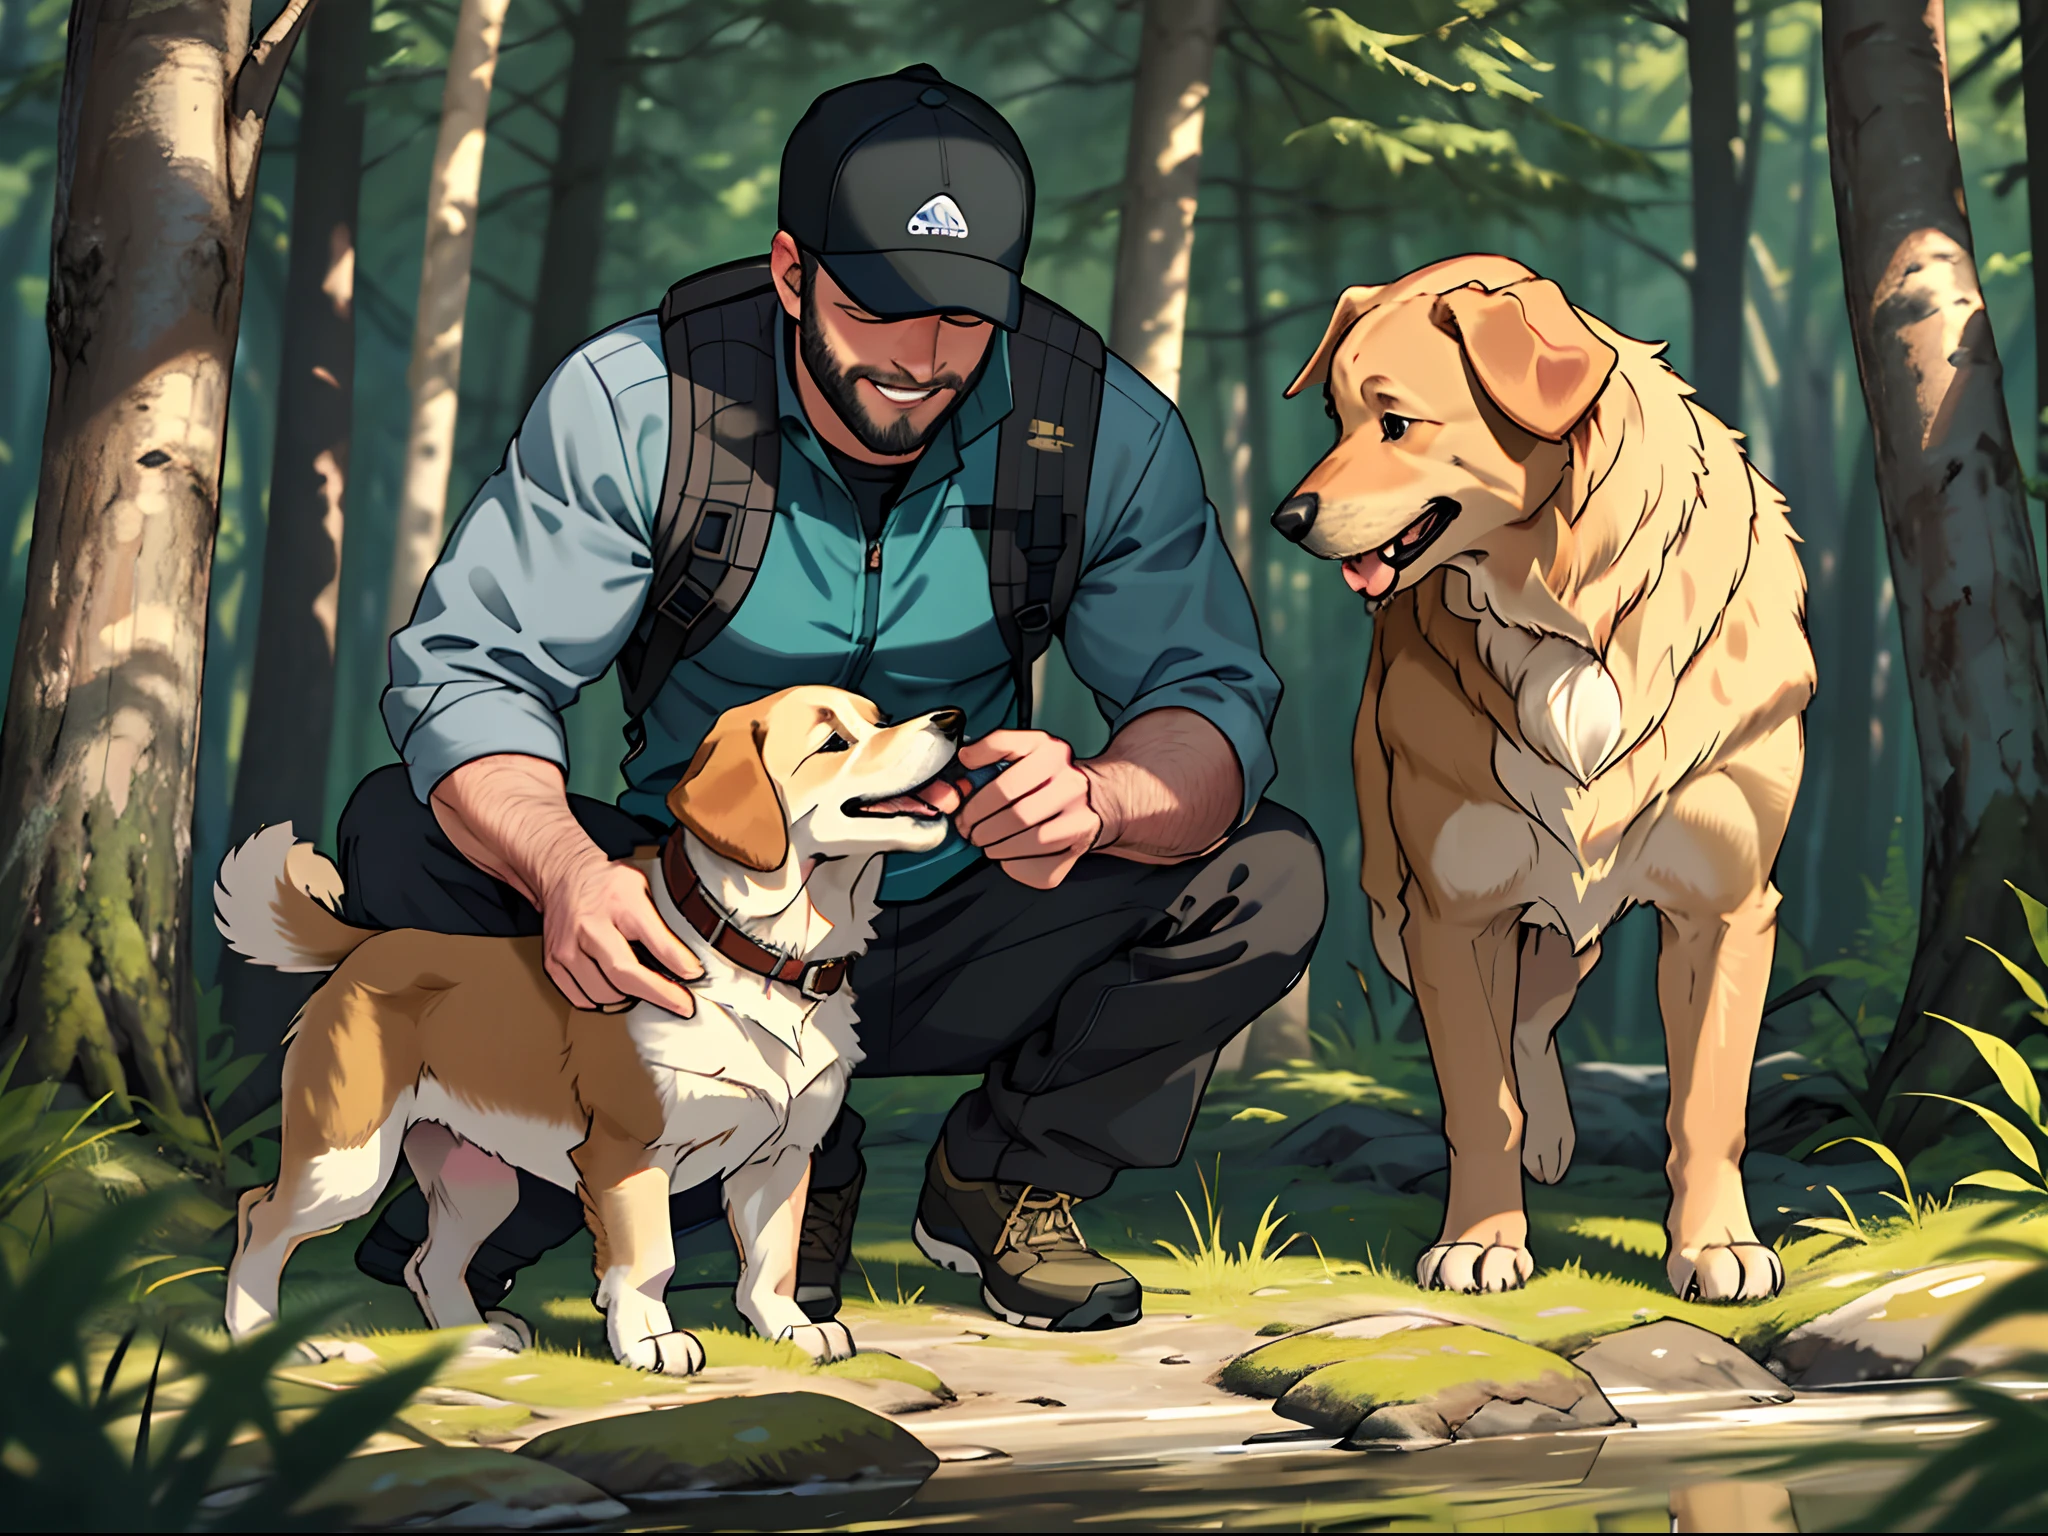 一個留著鬍子的男人和一隻黃金獵犬, 登山服, 戴眼鏡, 在樹林裡, 狗狗舔男人的臉, 詳細的, 臉部對焦, 幸福的笑容, 暖心的